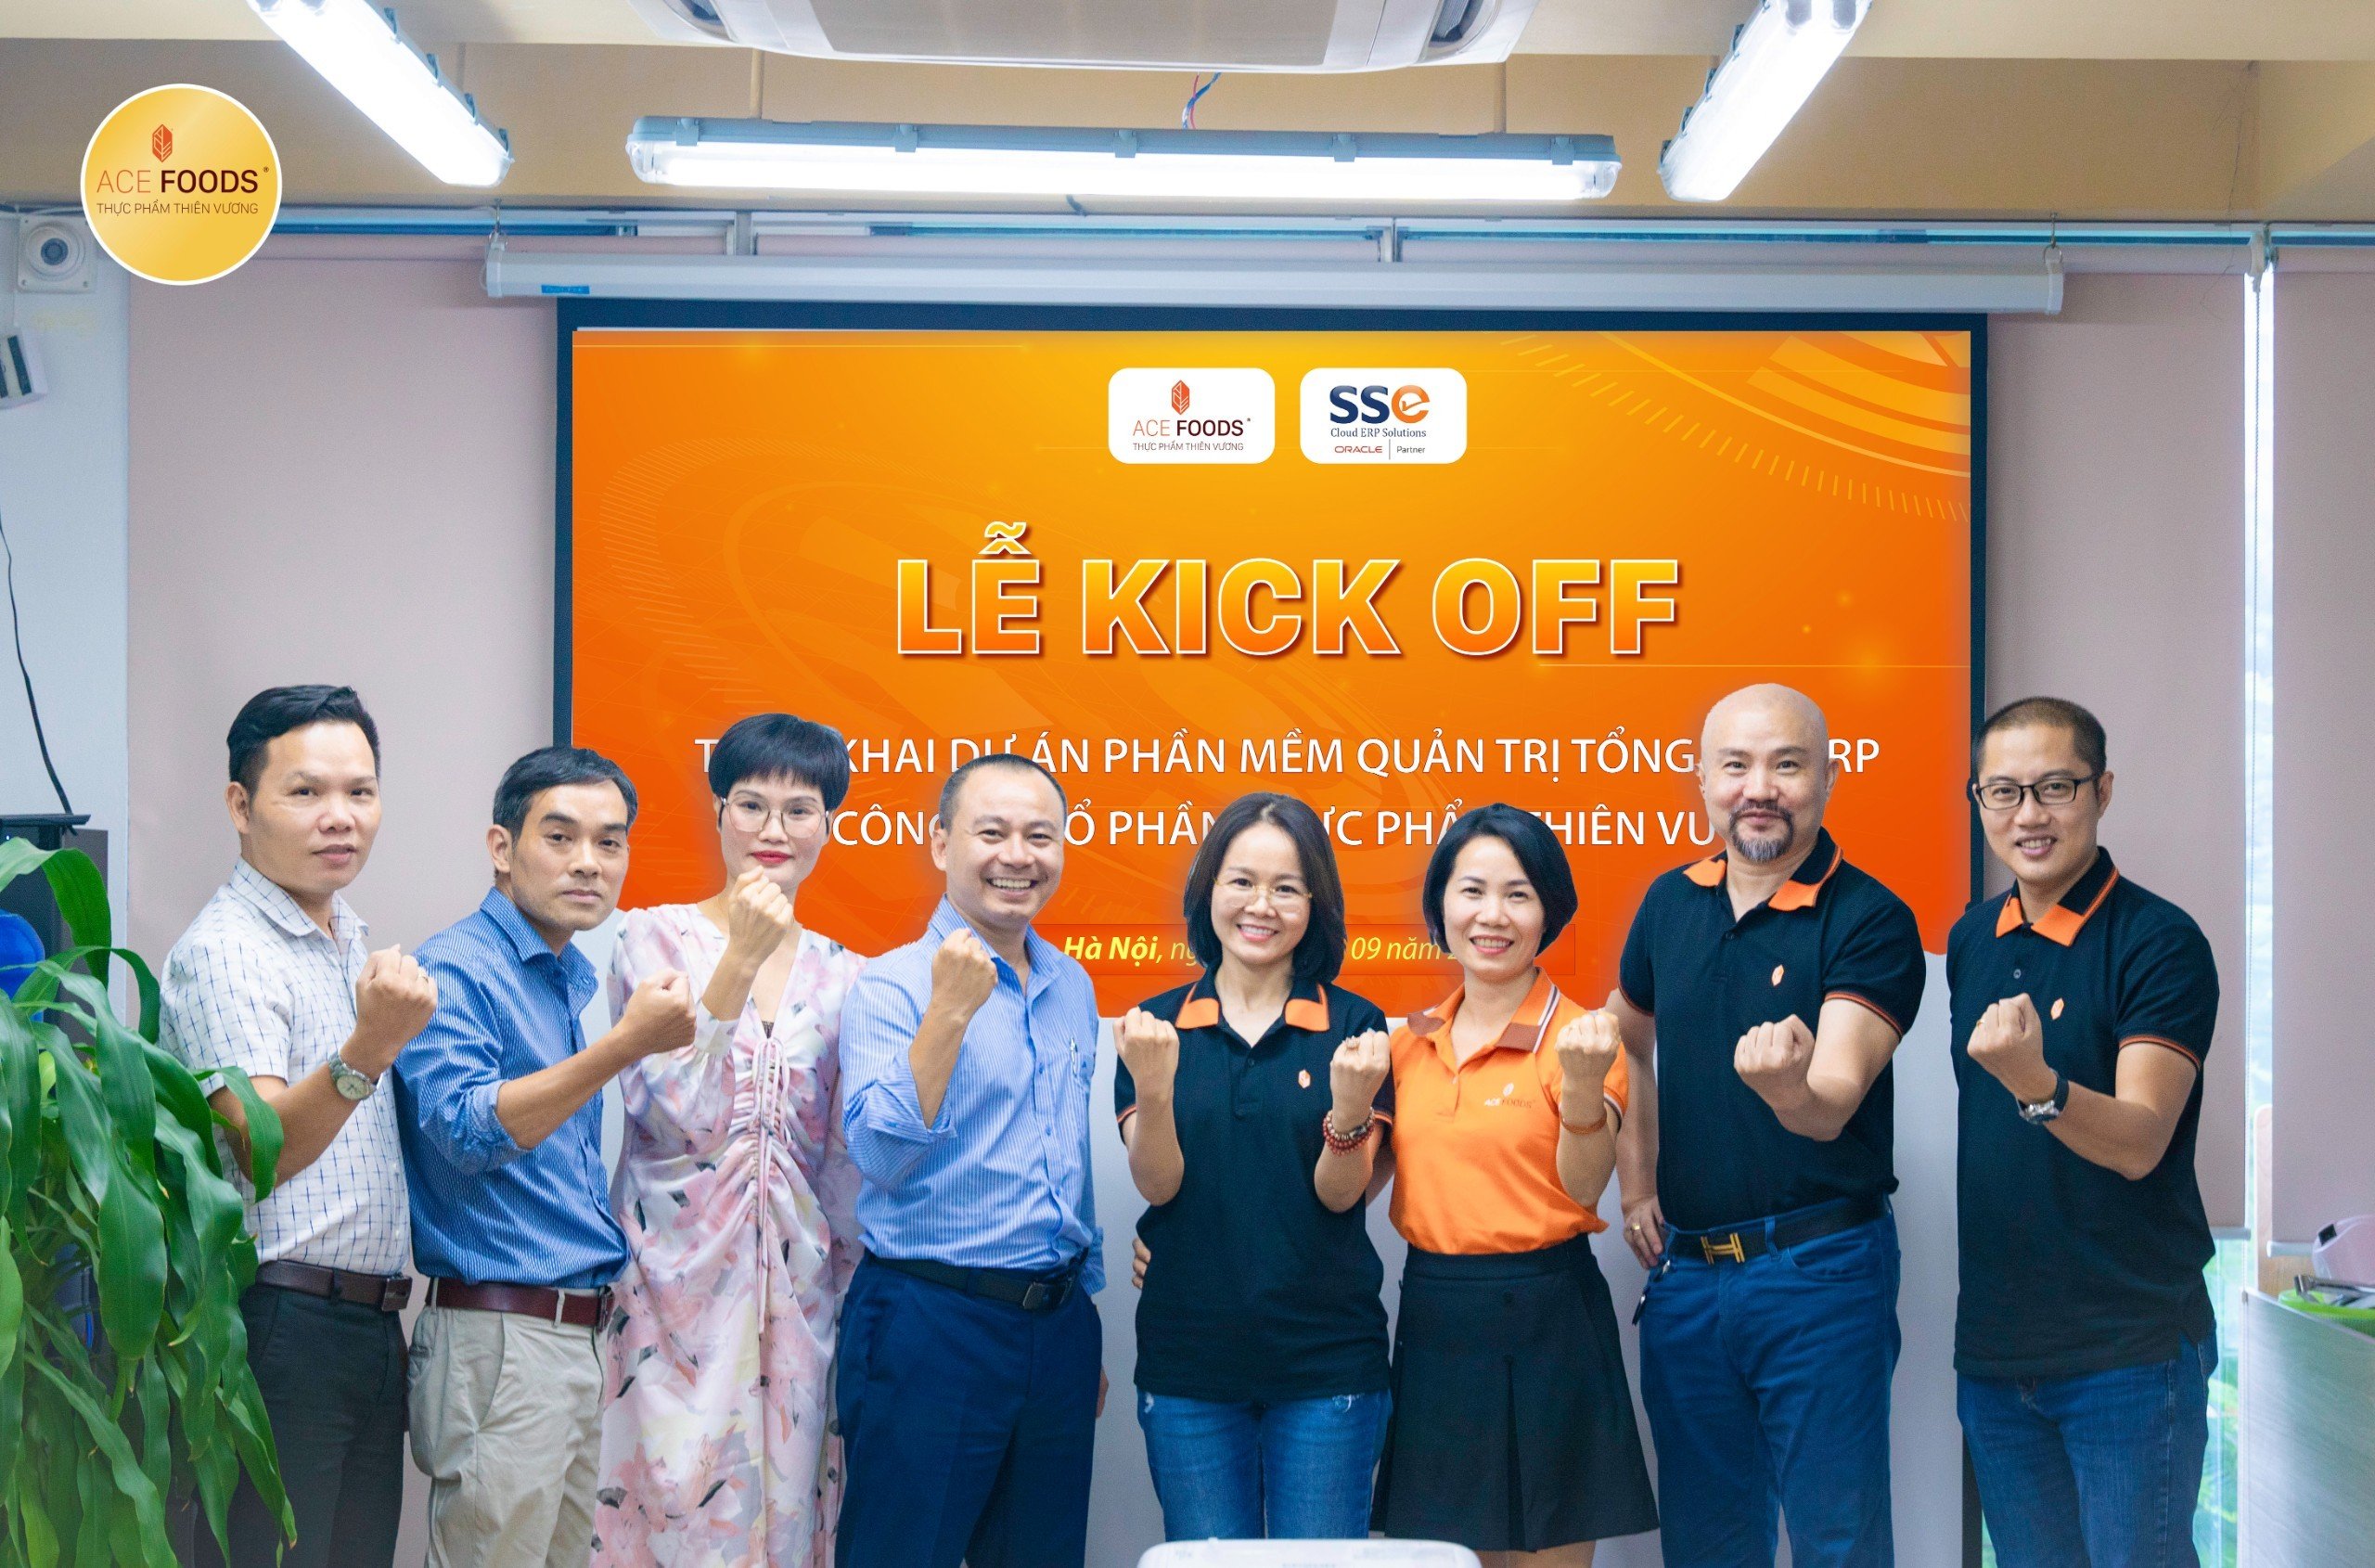 Thiên Vương ACE FOODS công bố chính thức lễ kick off hệ thống Quản trị doanh nghiệp tổng thể ERP